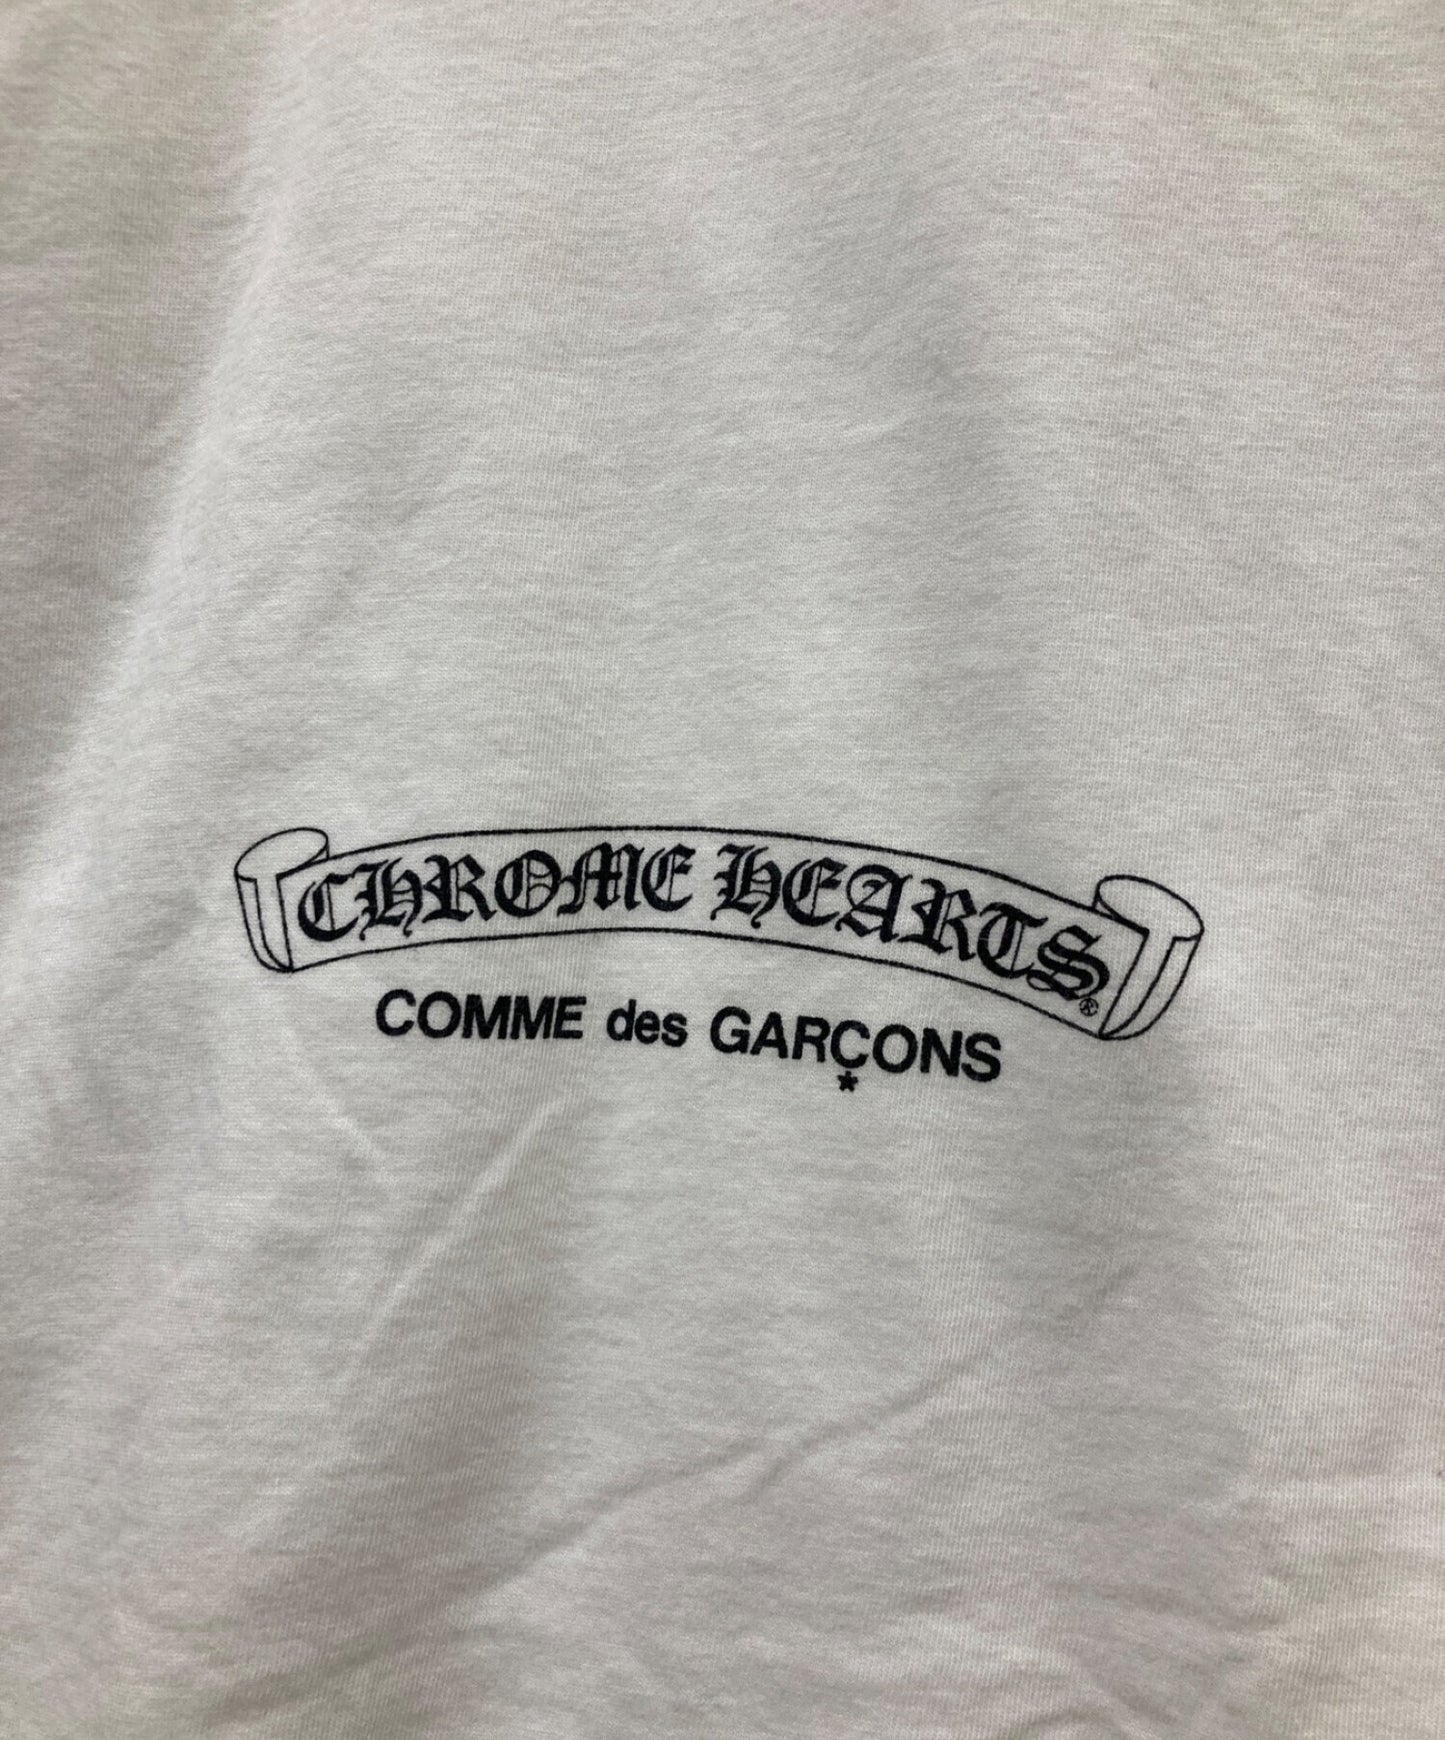 Comme des Garcons×Chrome Hearts转移印刷T恤OT-T019